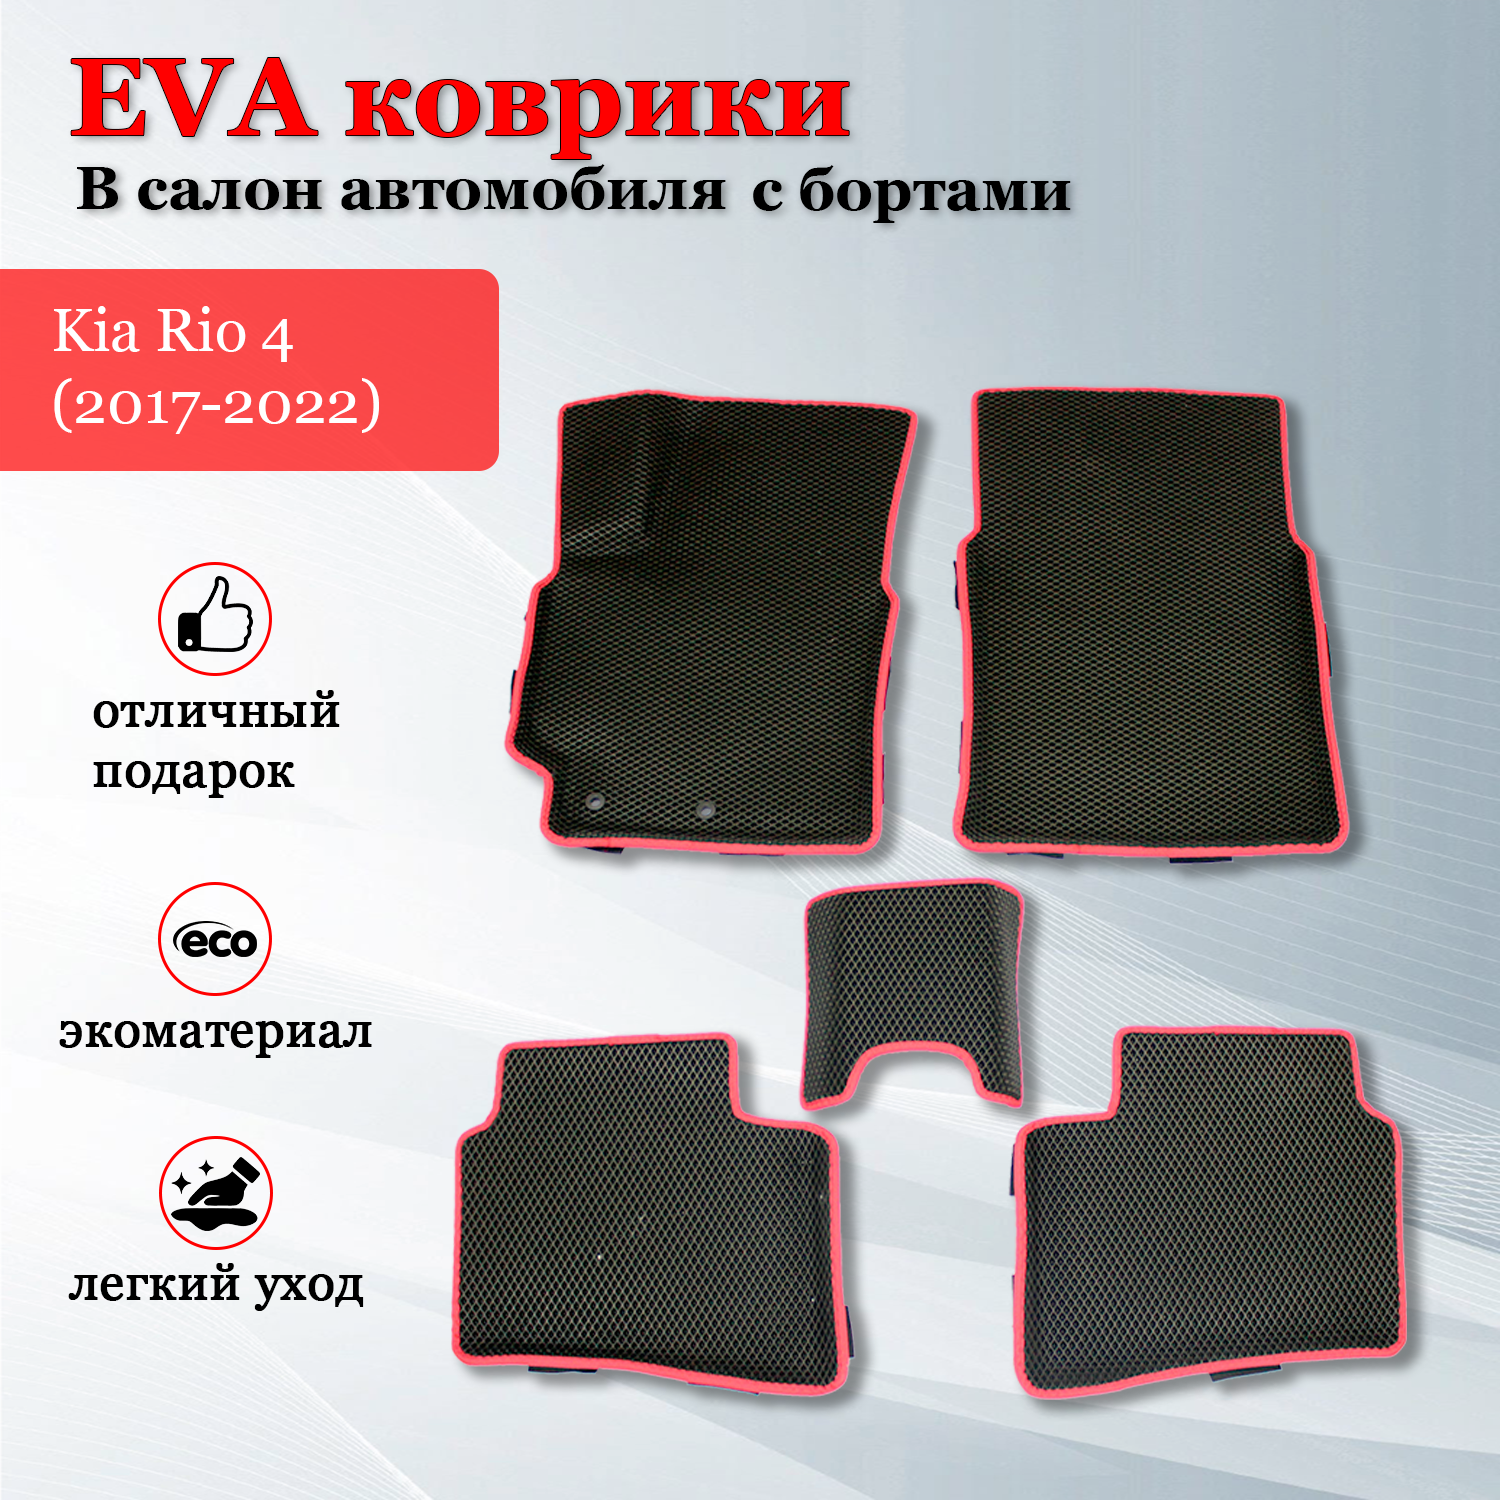 EVA (EВА, ЭВА) коврики с бортами в салон автомобиля Киа Рио 4 / Kia Rio 4 (2017-2023) черные/красный кант